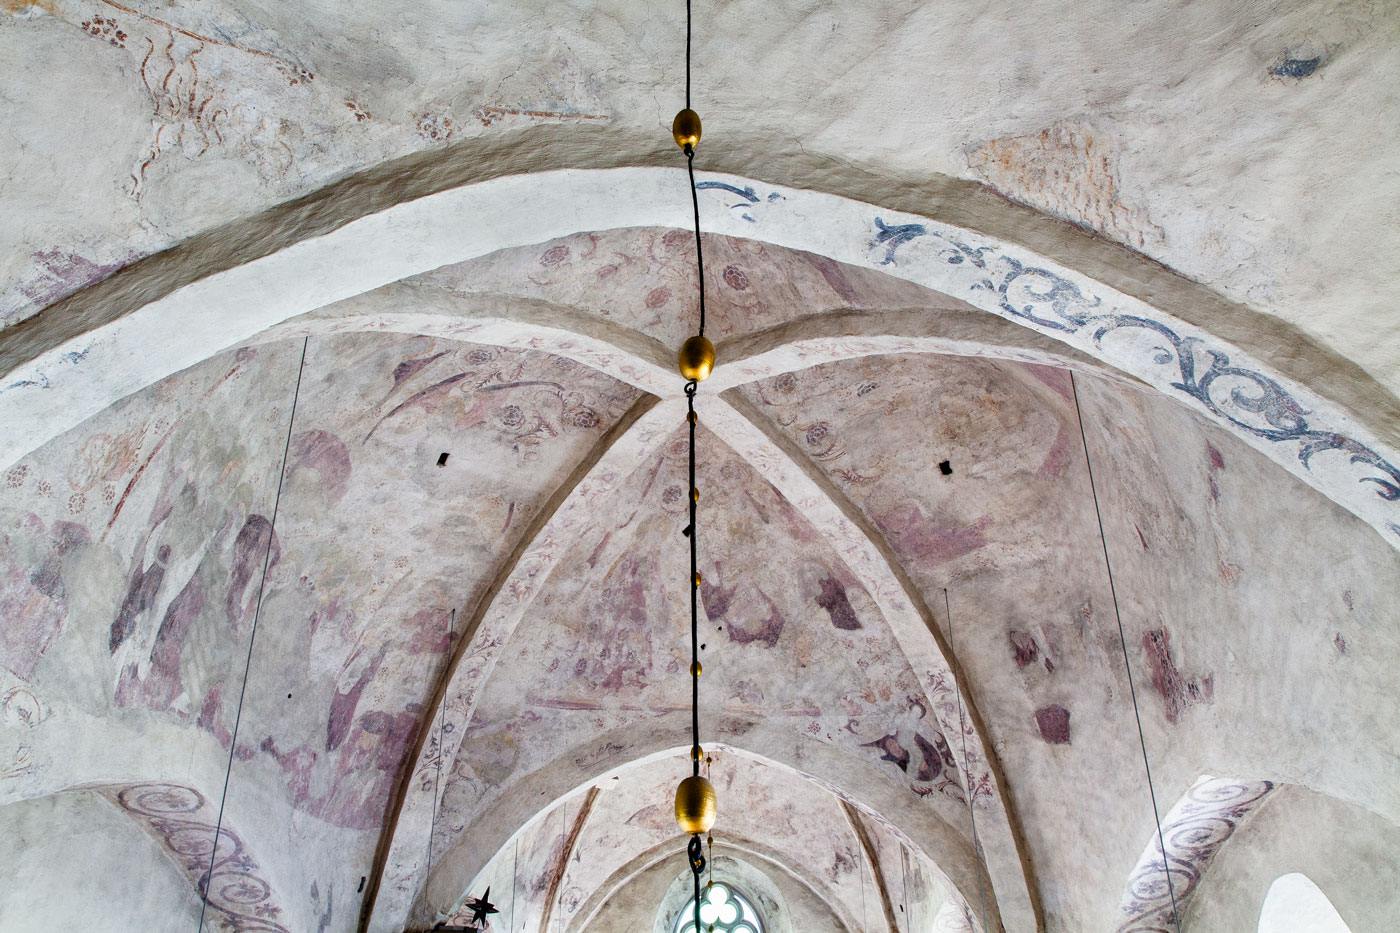 Interiör, valvet, travé II - Kalmars kyrka